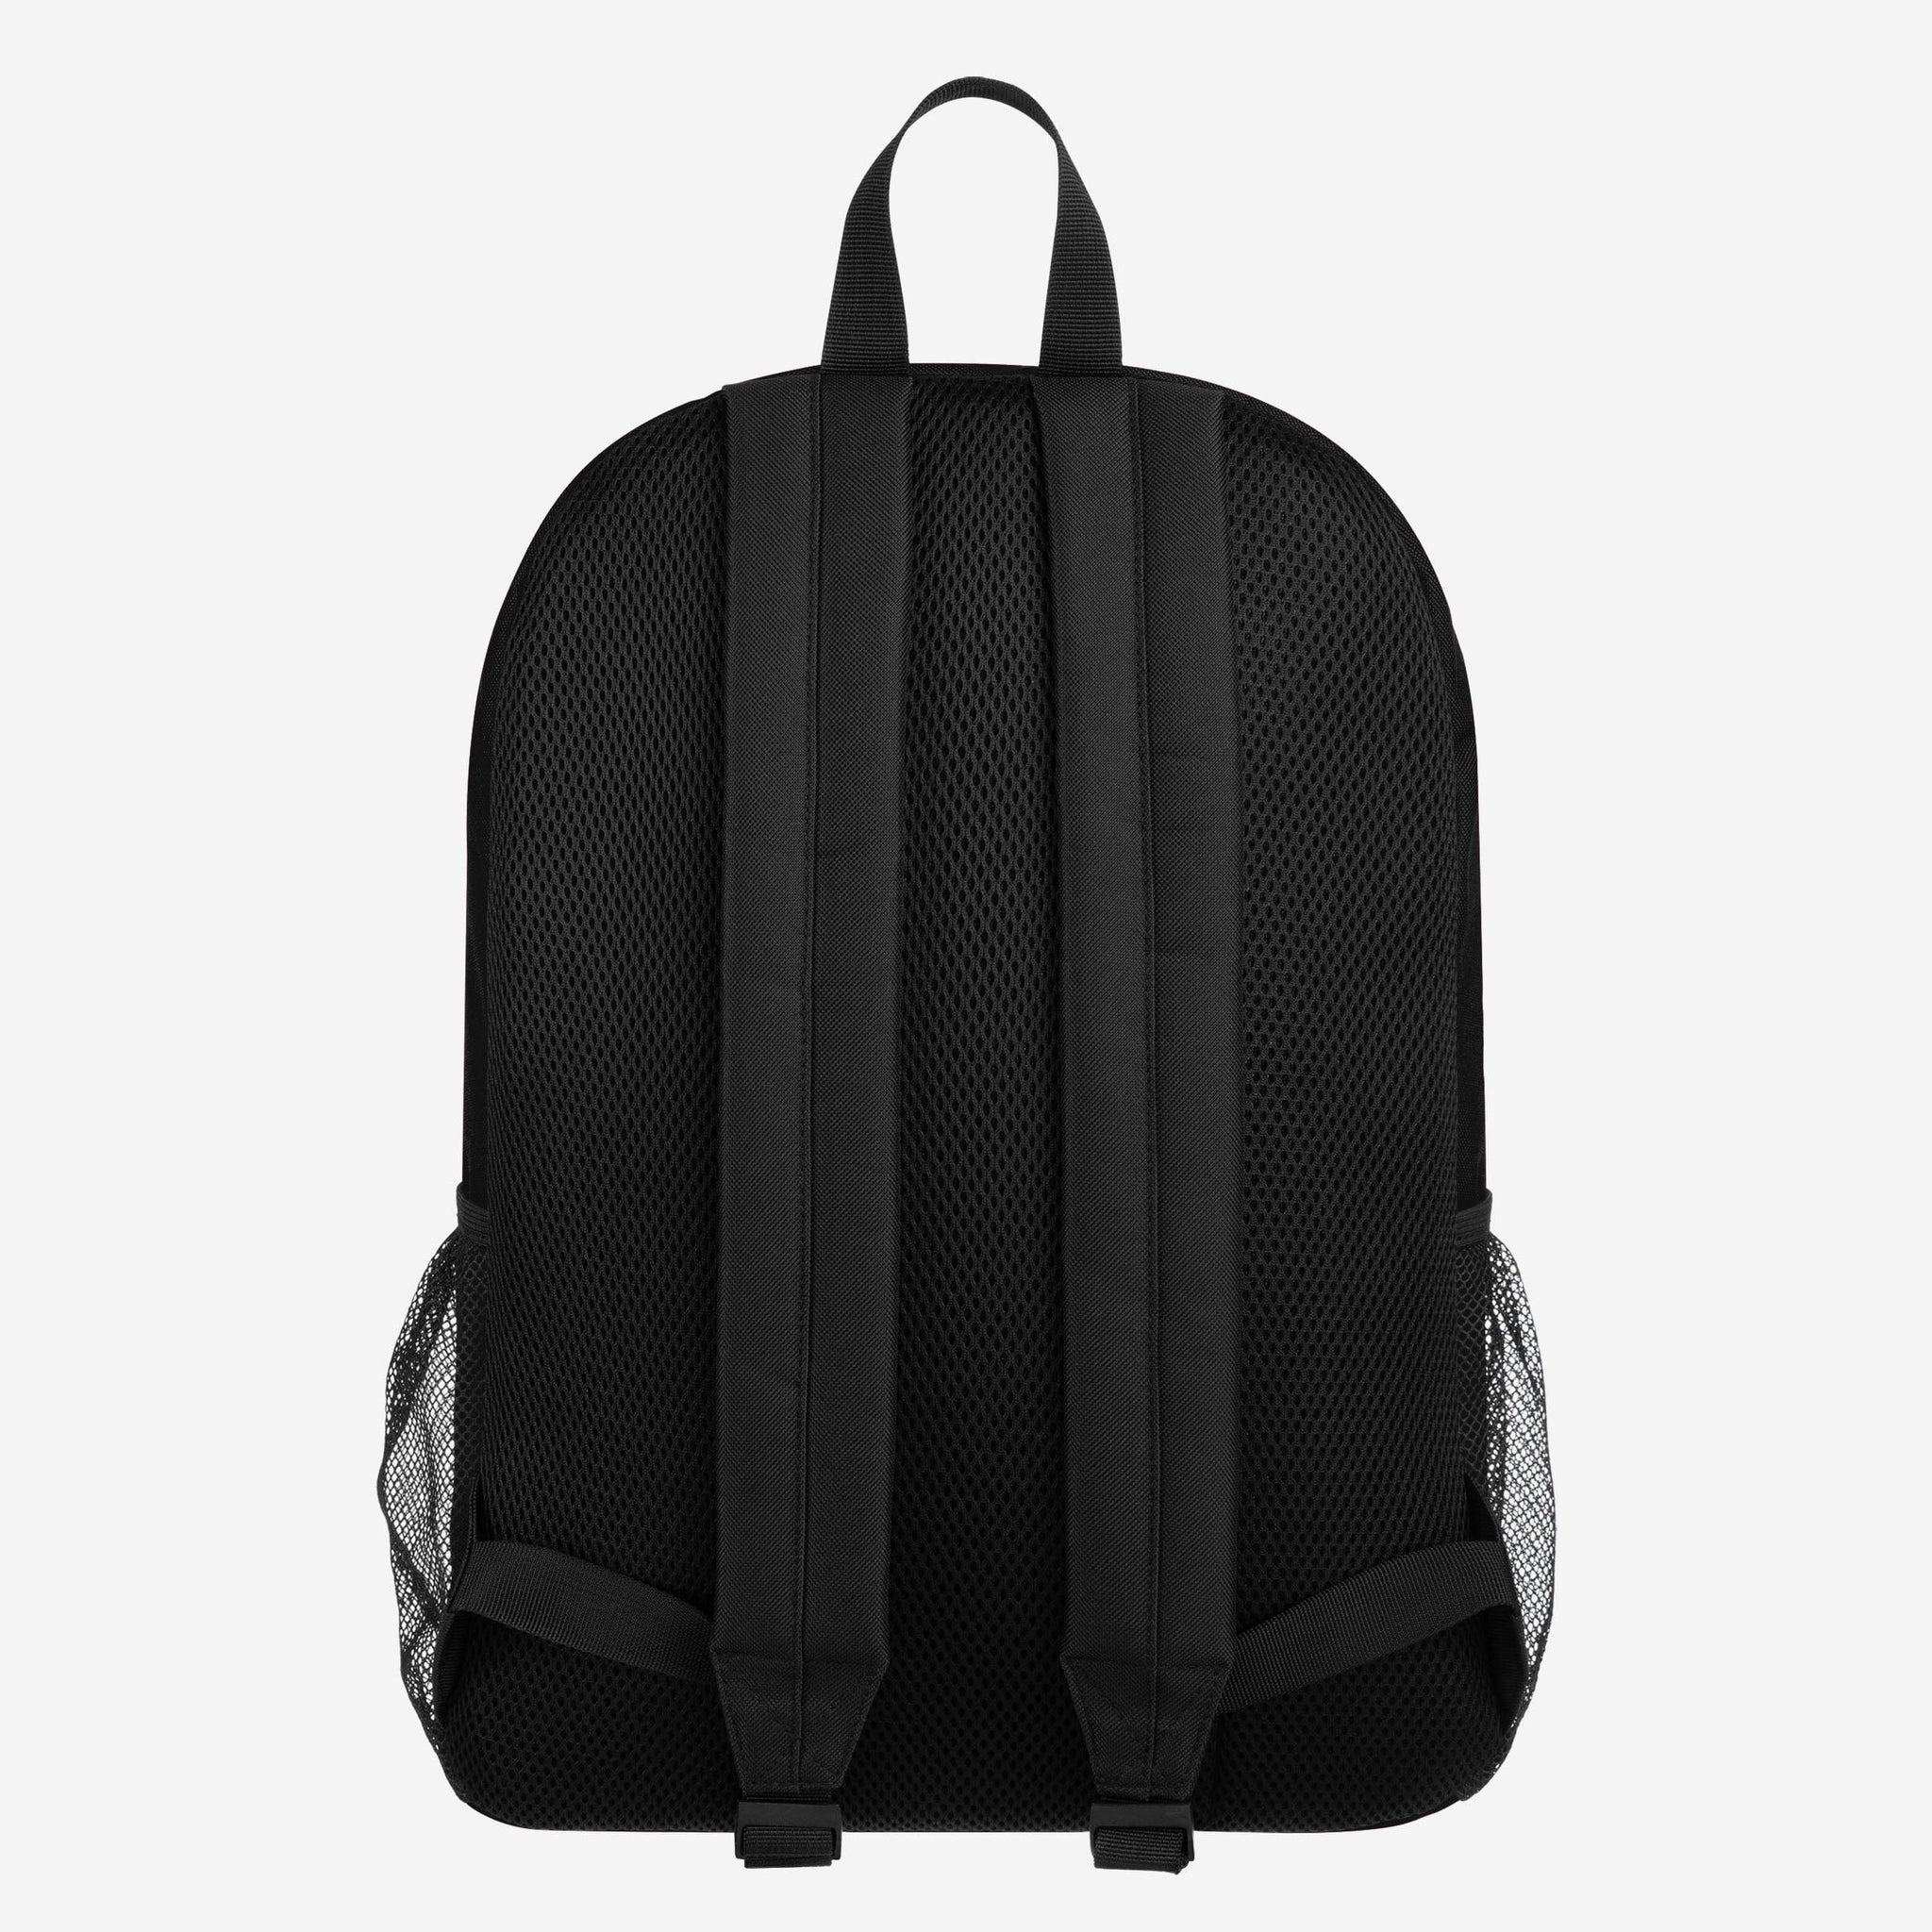 Orlando Magic NBA Kids Mini Backpack School Bag